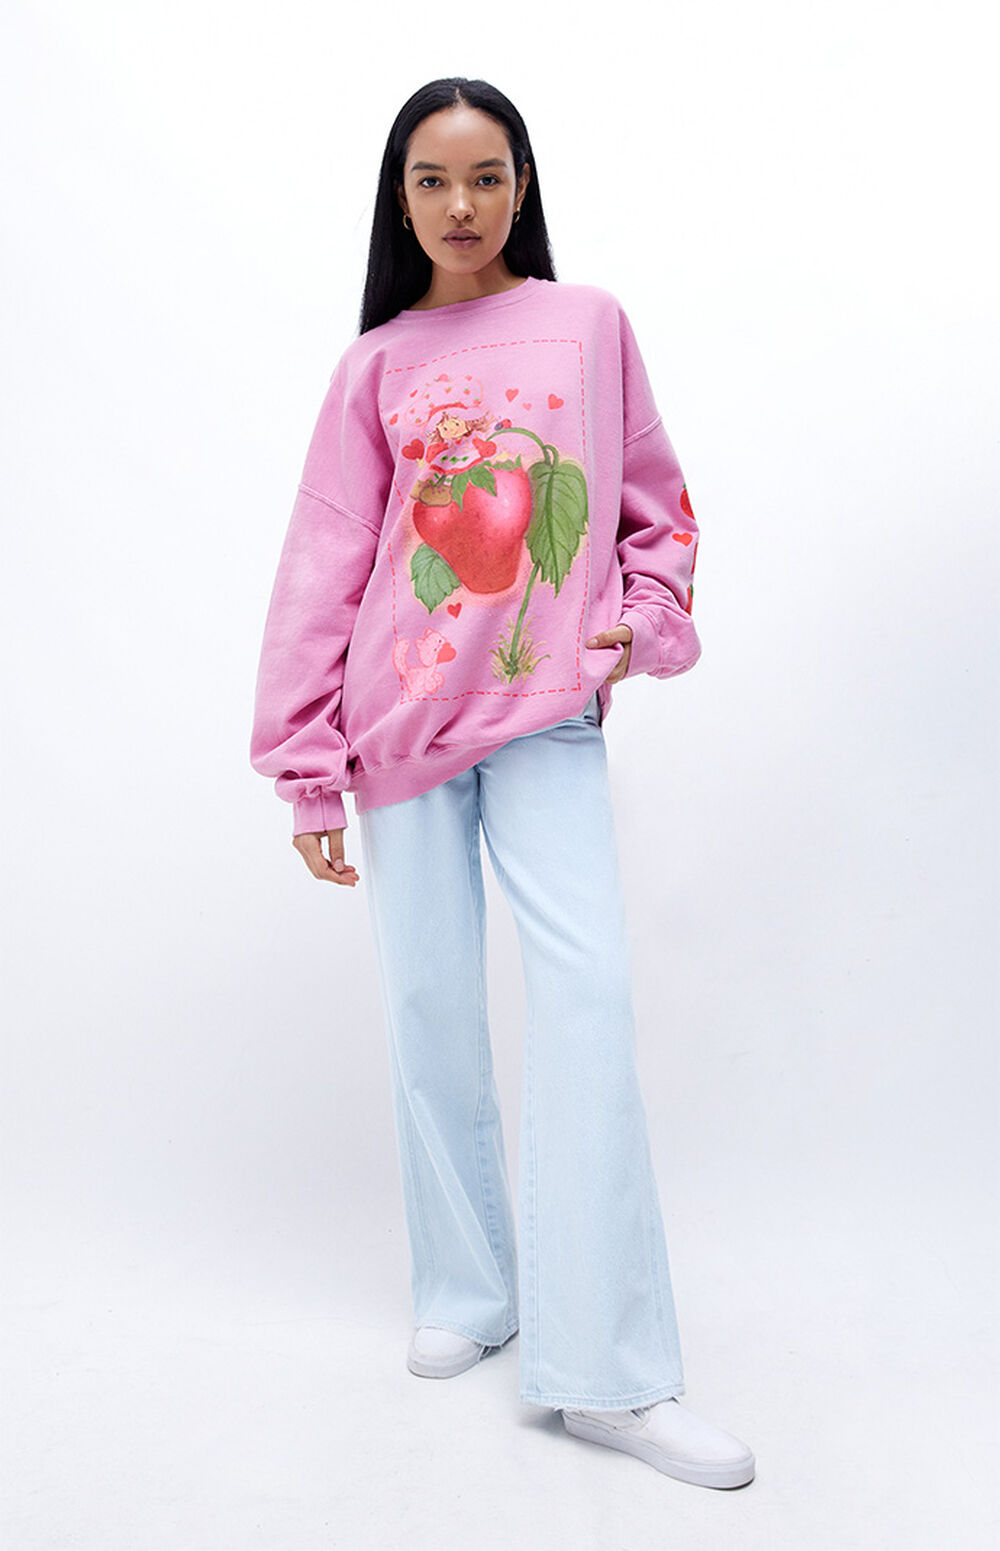 Strawberry Shortcake Love & Berries Oversized Sweatshirt | PacSun